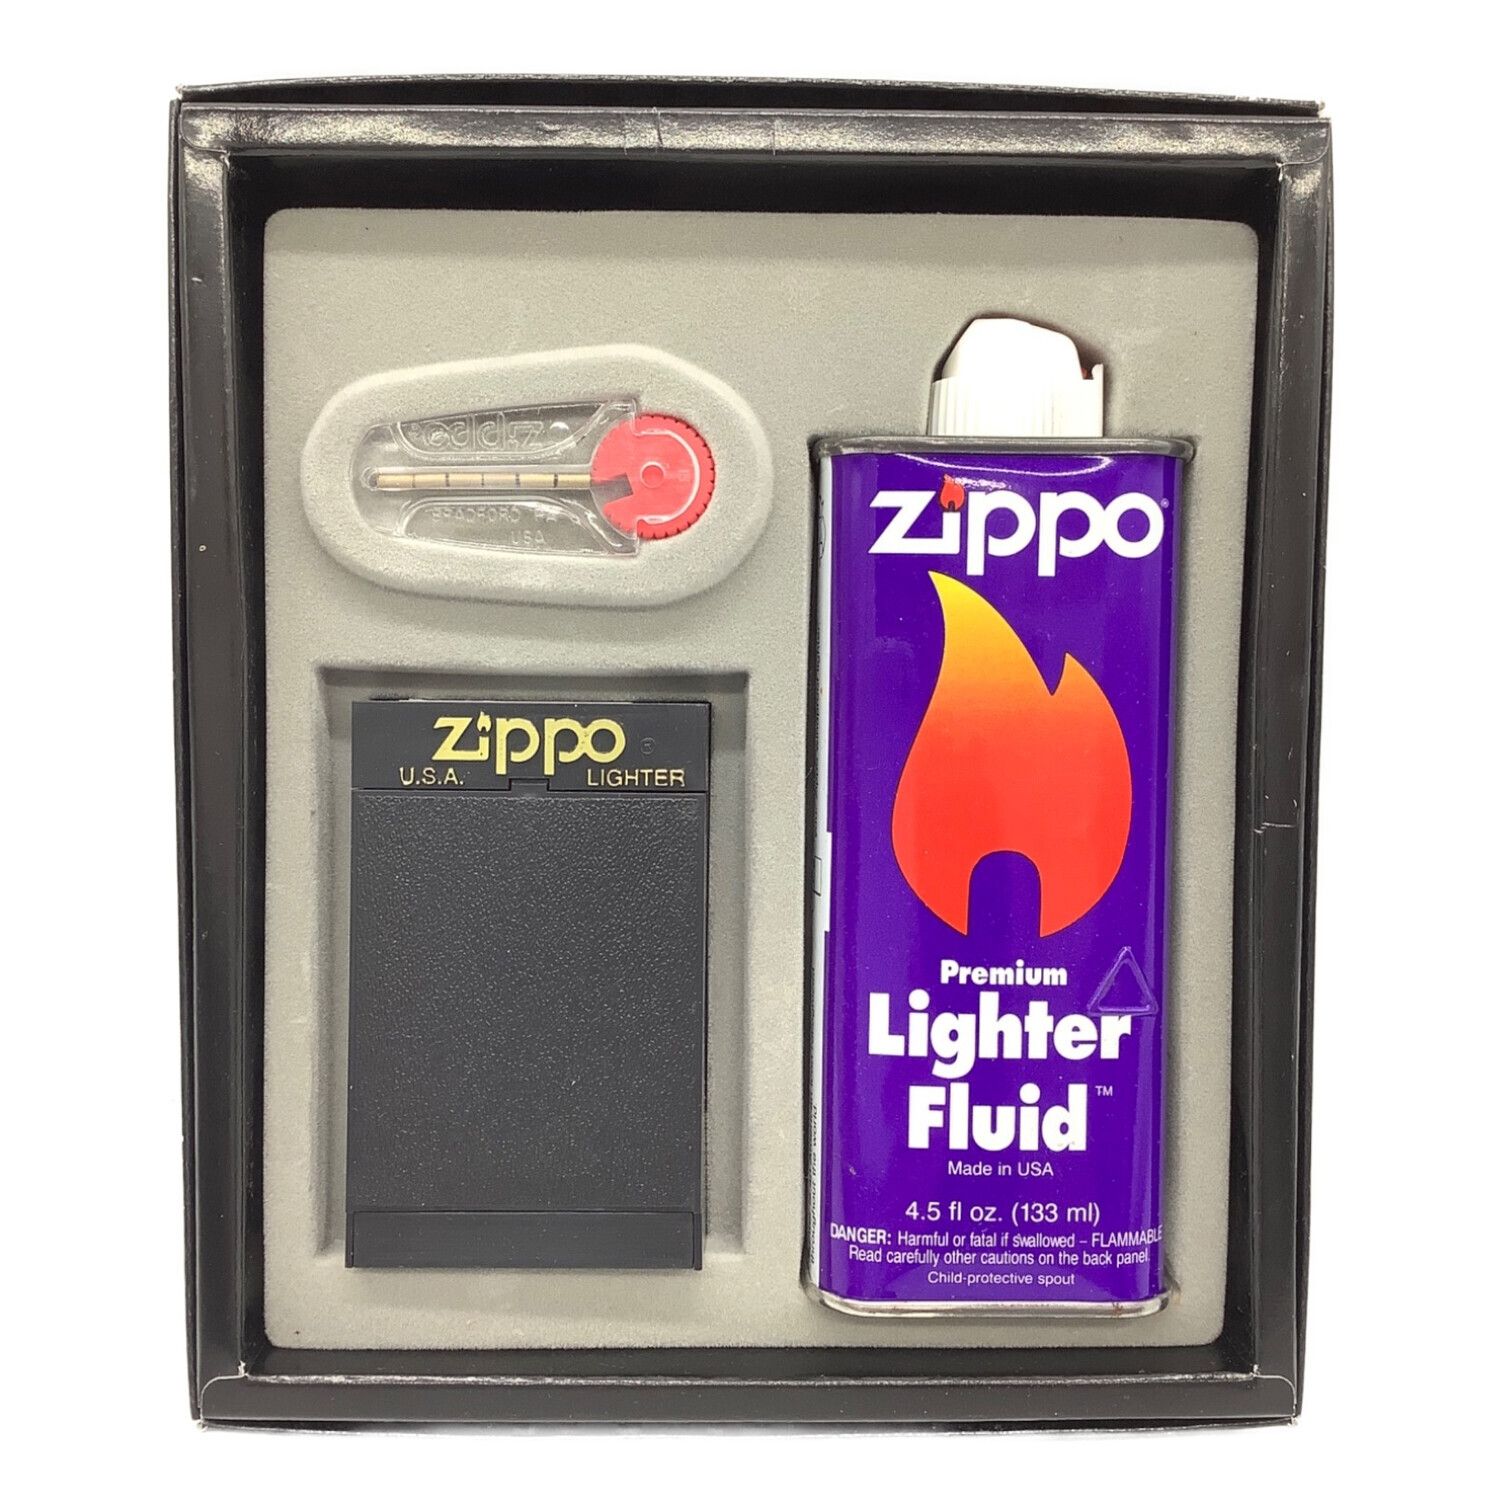 ZIPPO (ジッポ) 歴代オイル缶柄ジッポー ギフトセット 2002年製 未開封 